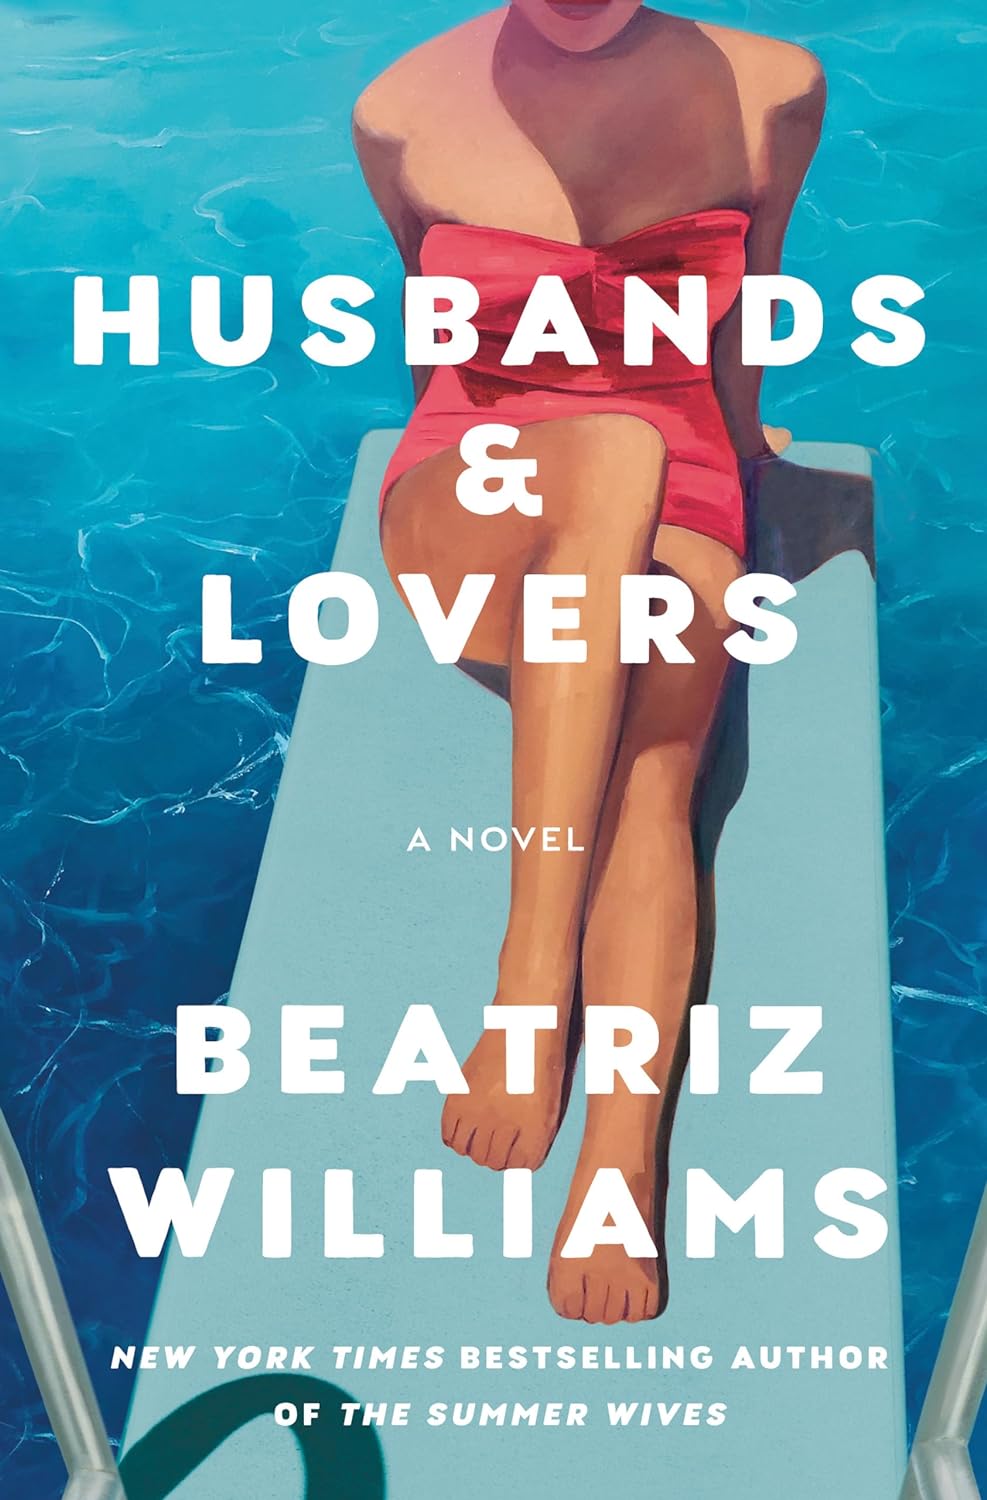 Image for "Husbands & Lovers"